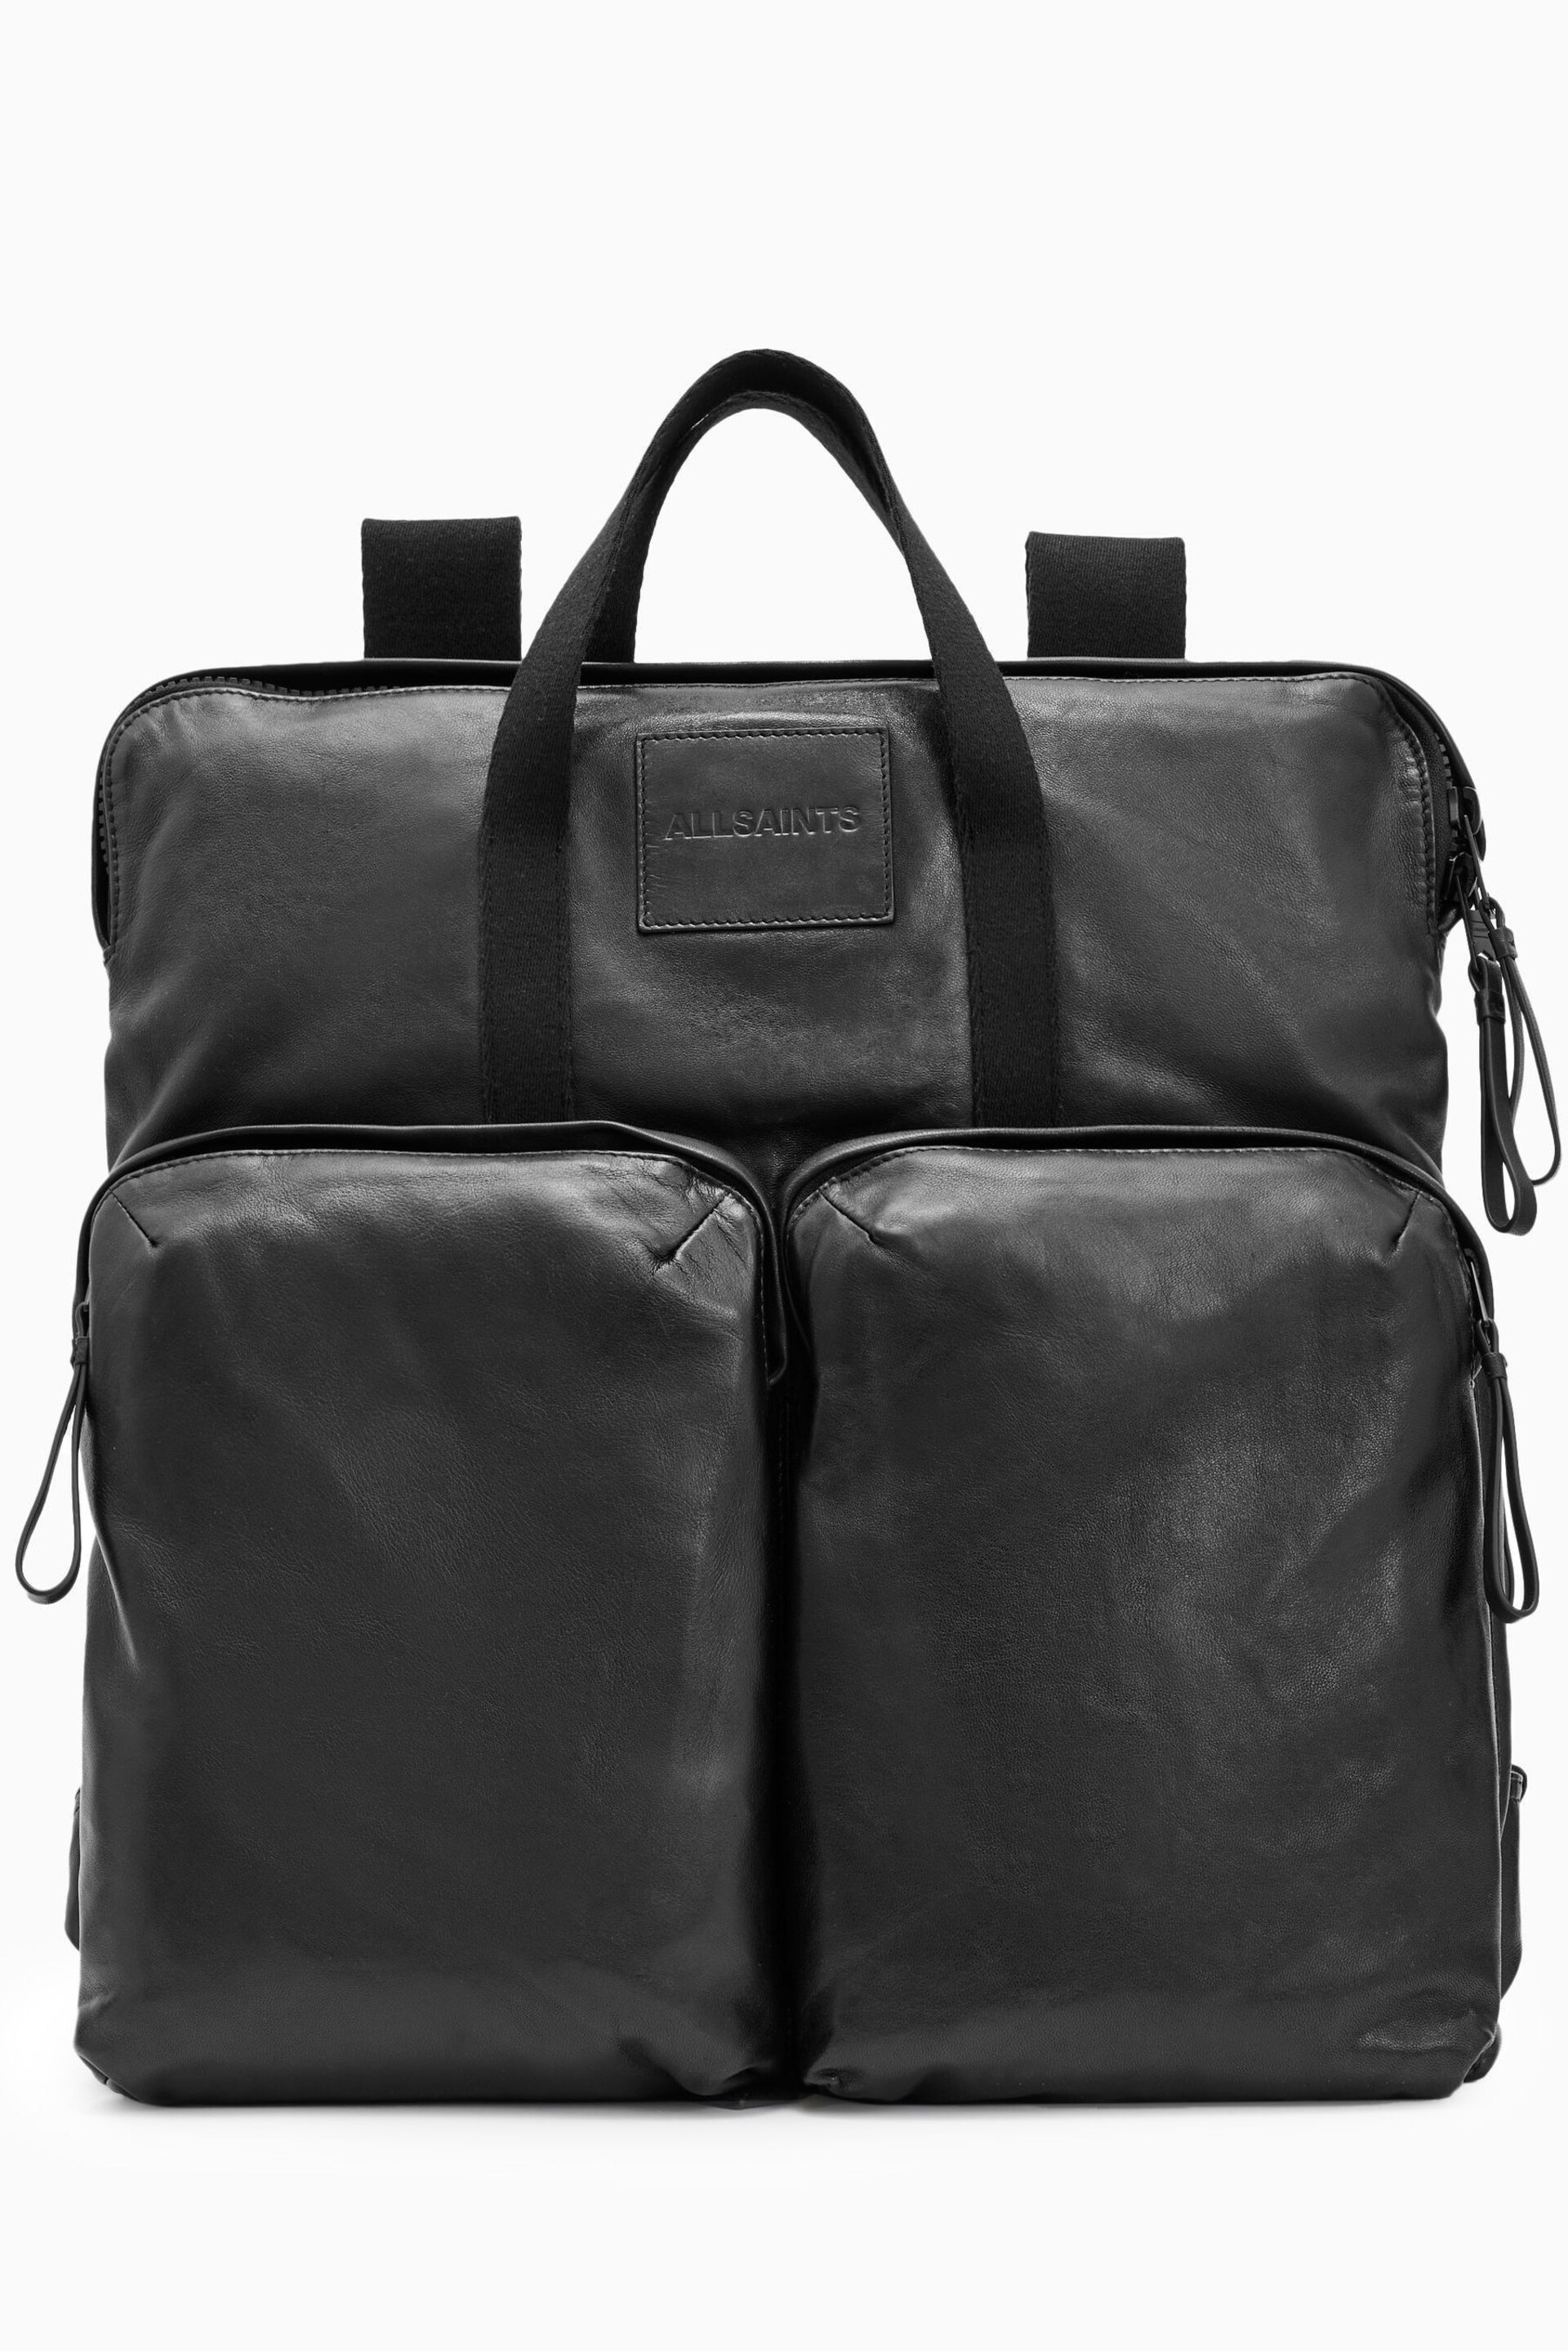 AllSaints Black Force Backpack - Image 3 of 5